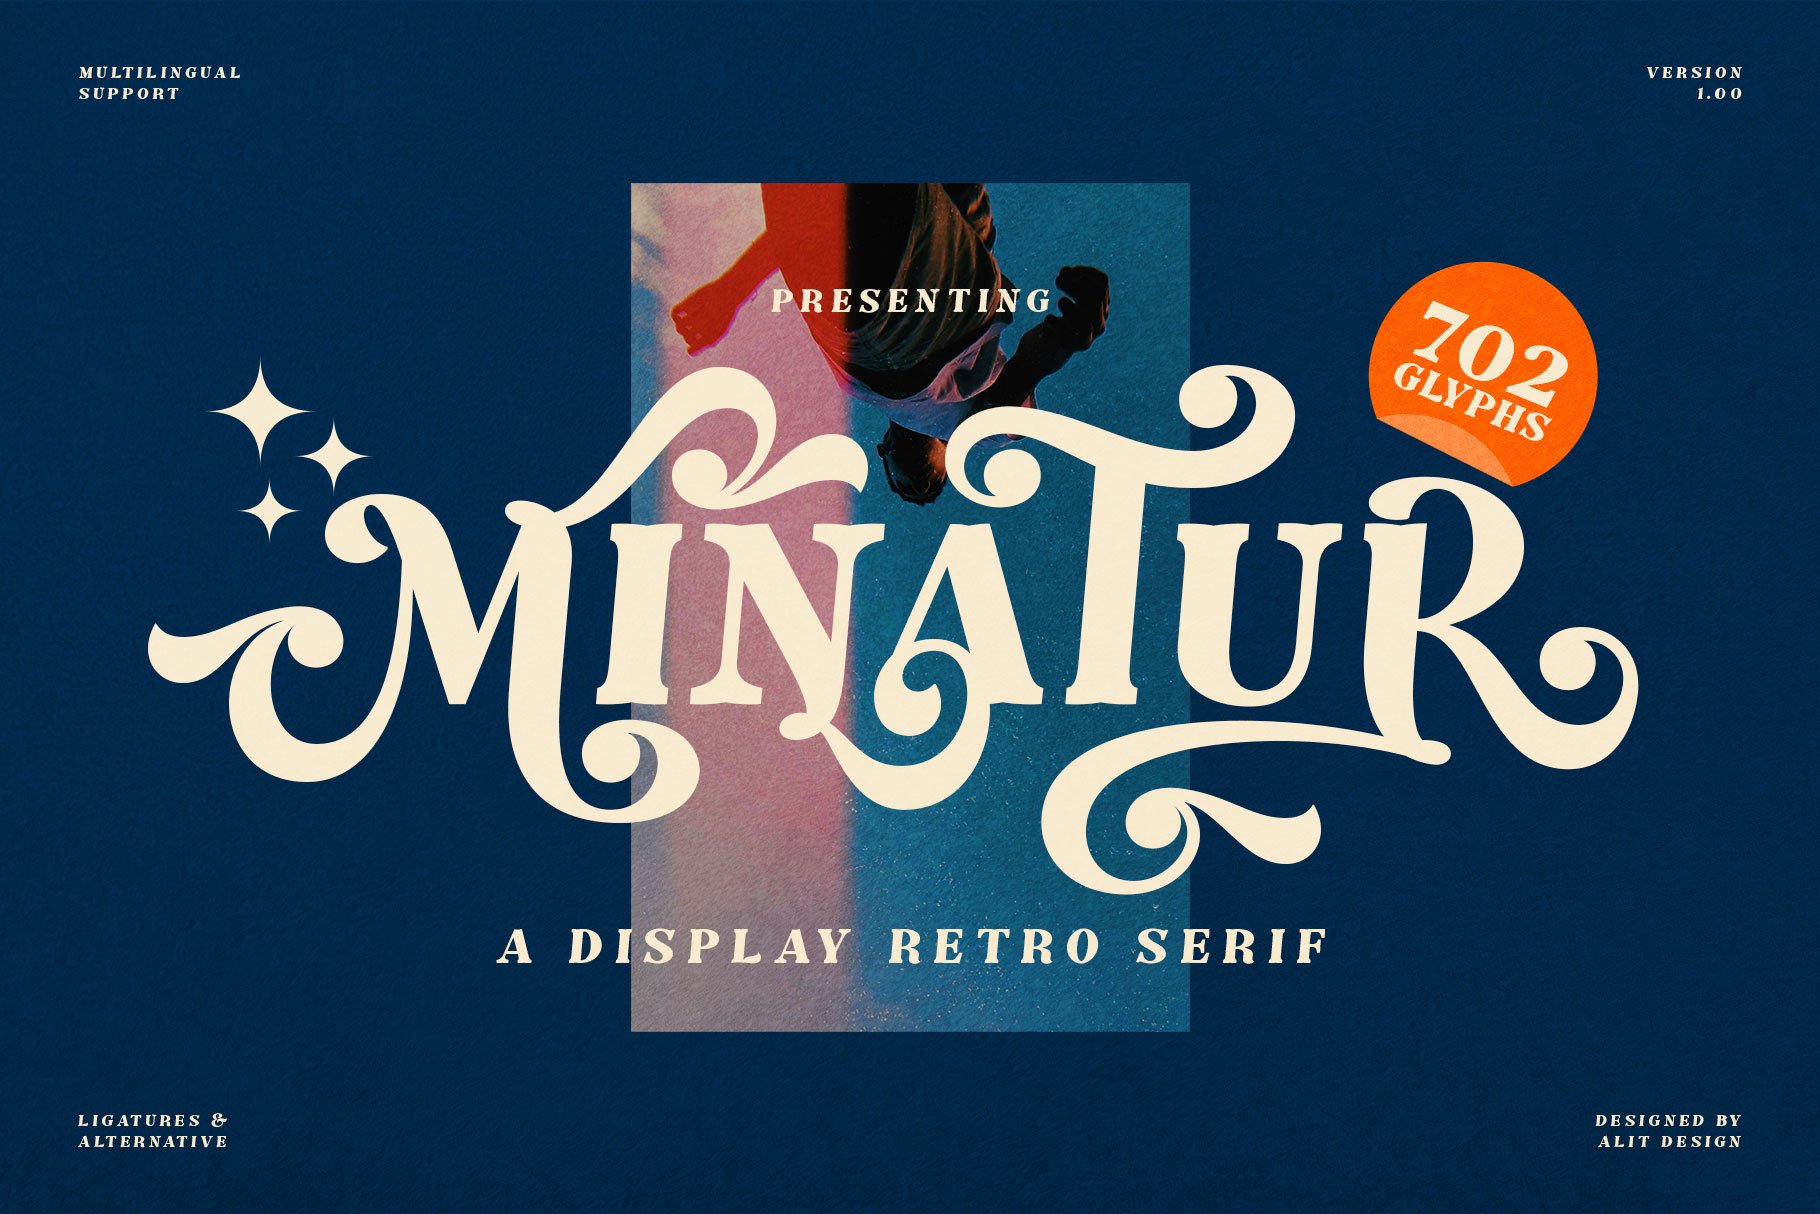 The Minatur Typefacecover image.